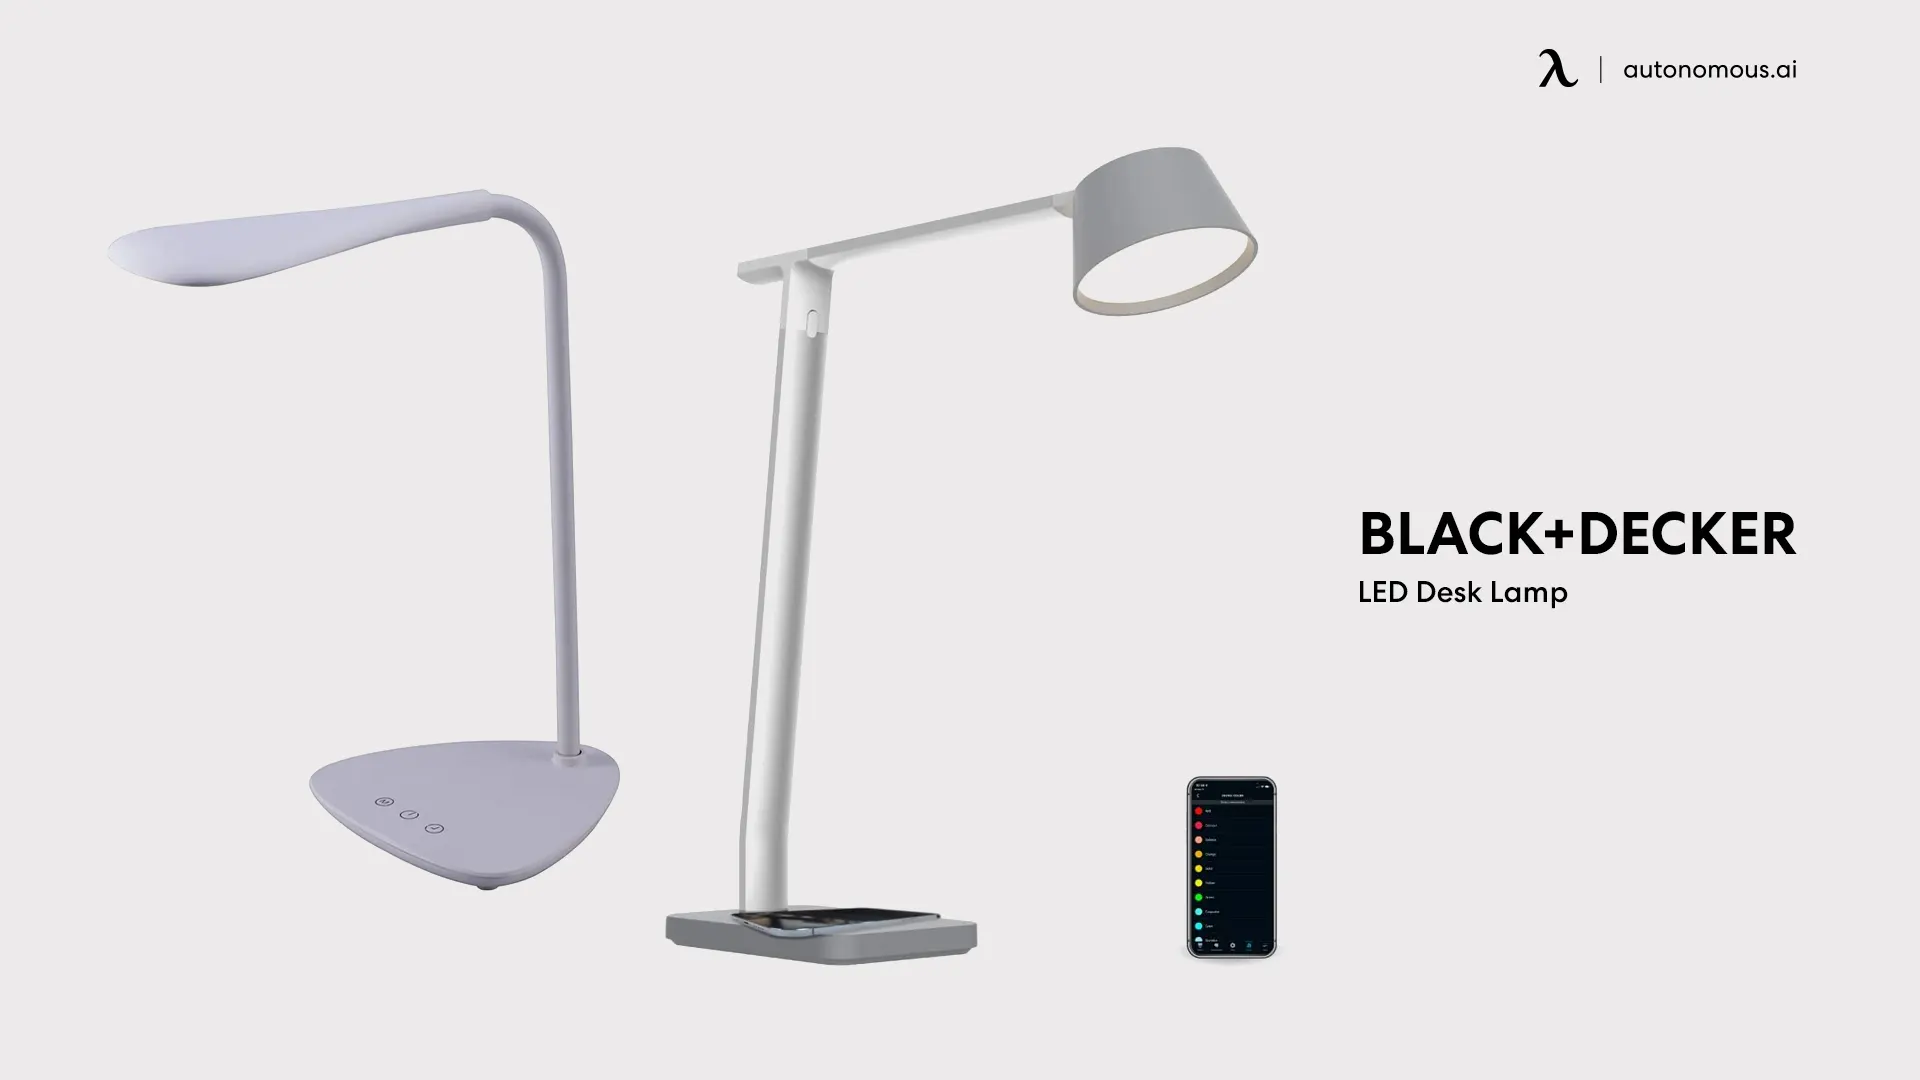 BLACK+DECKER LED Desk Lamp